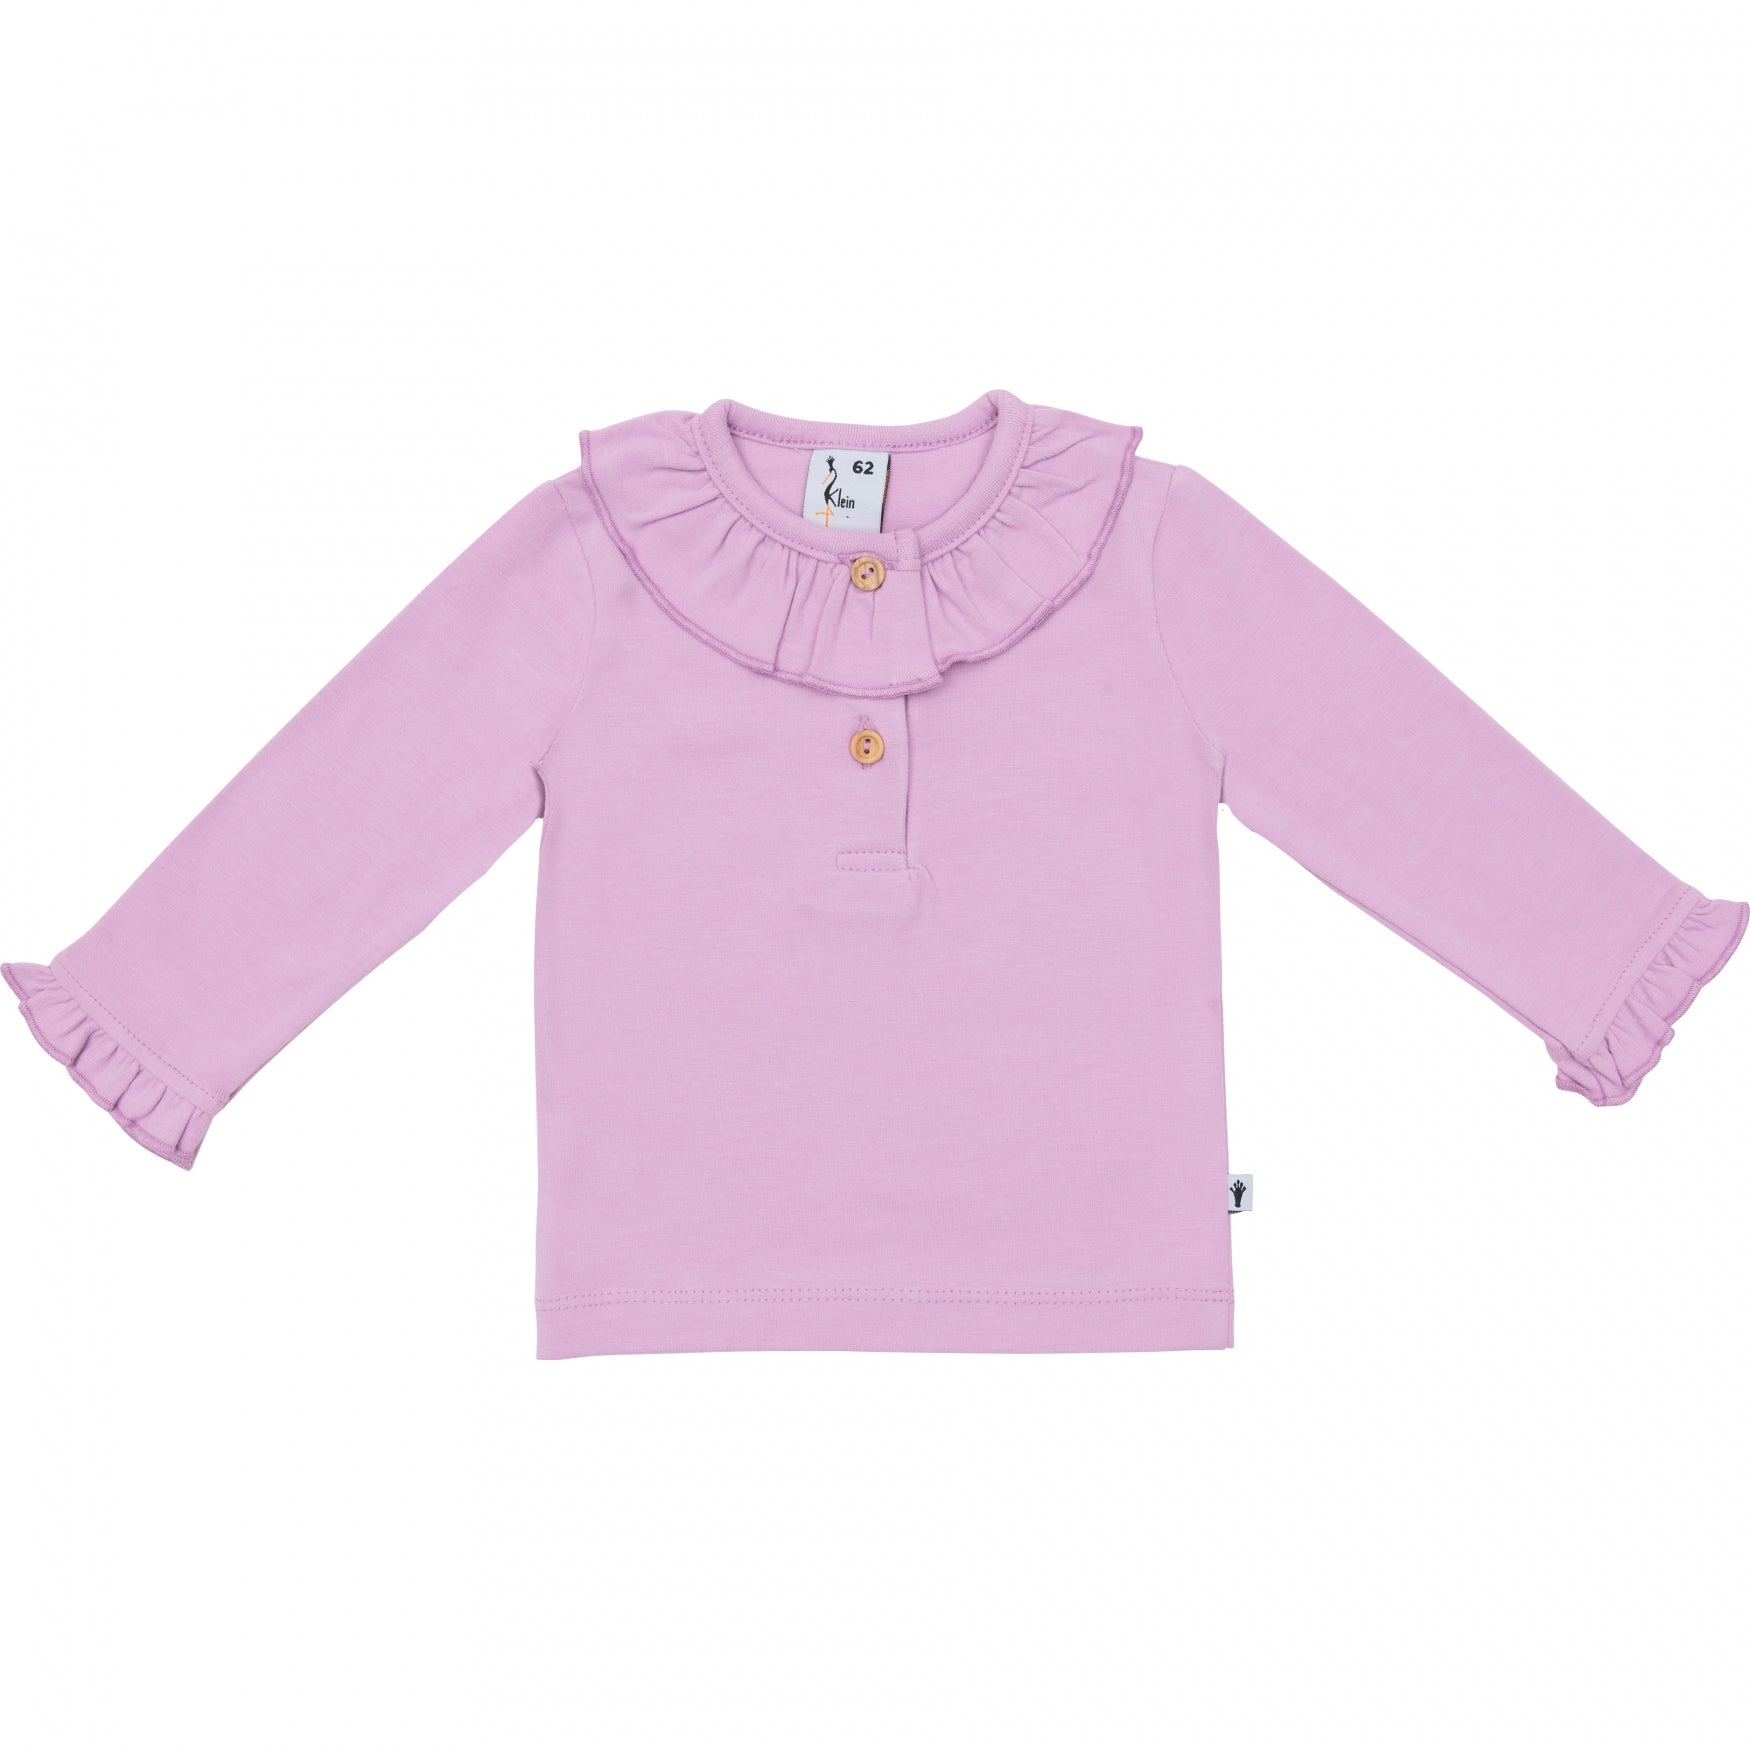 Meisjes Shirt Ruffle Collar van Klein Baby in de kleur Violet Tulle in maat 74.